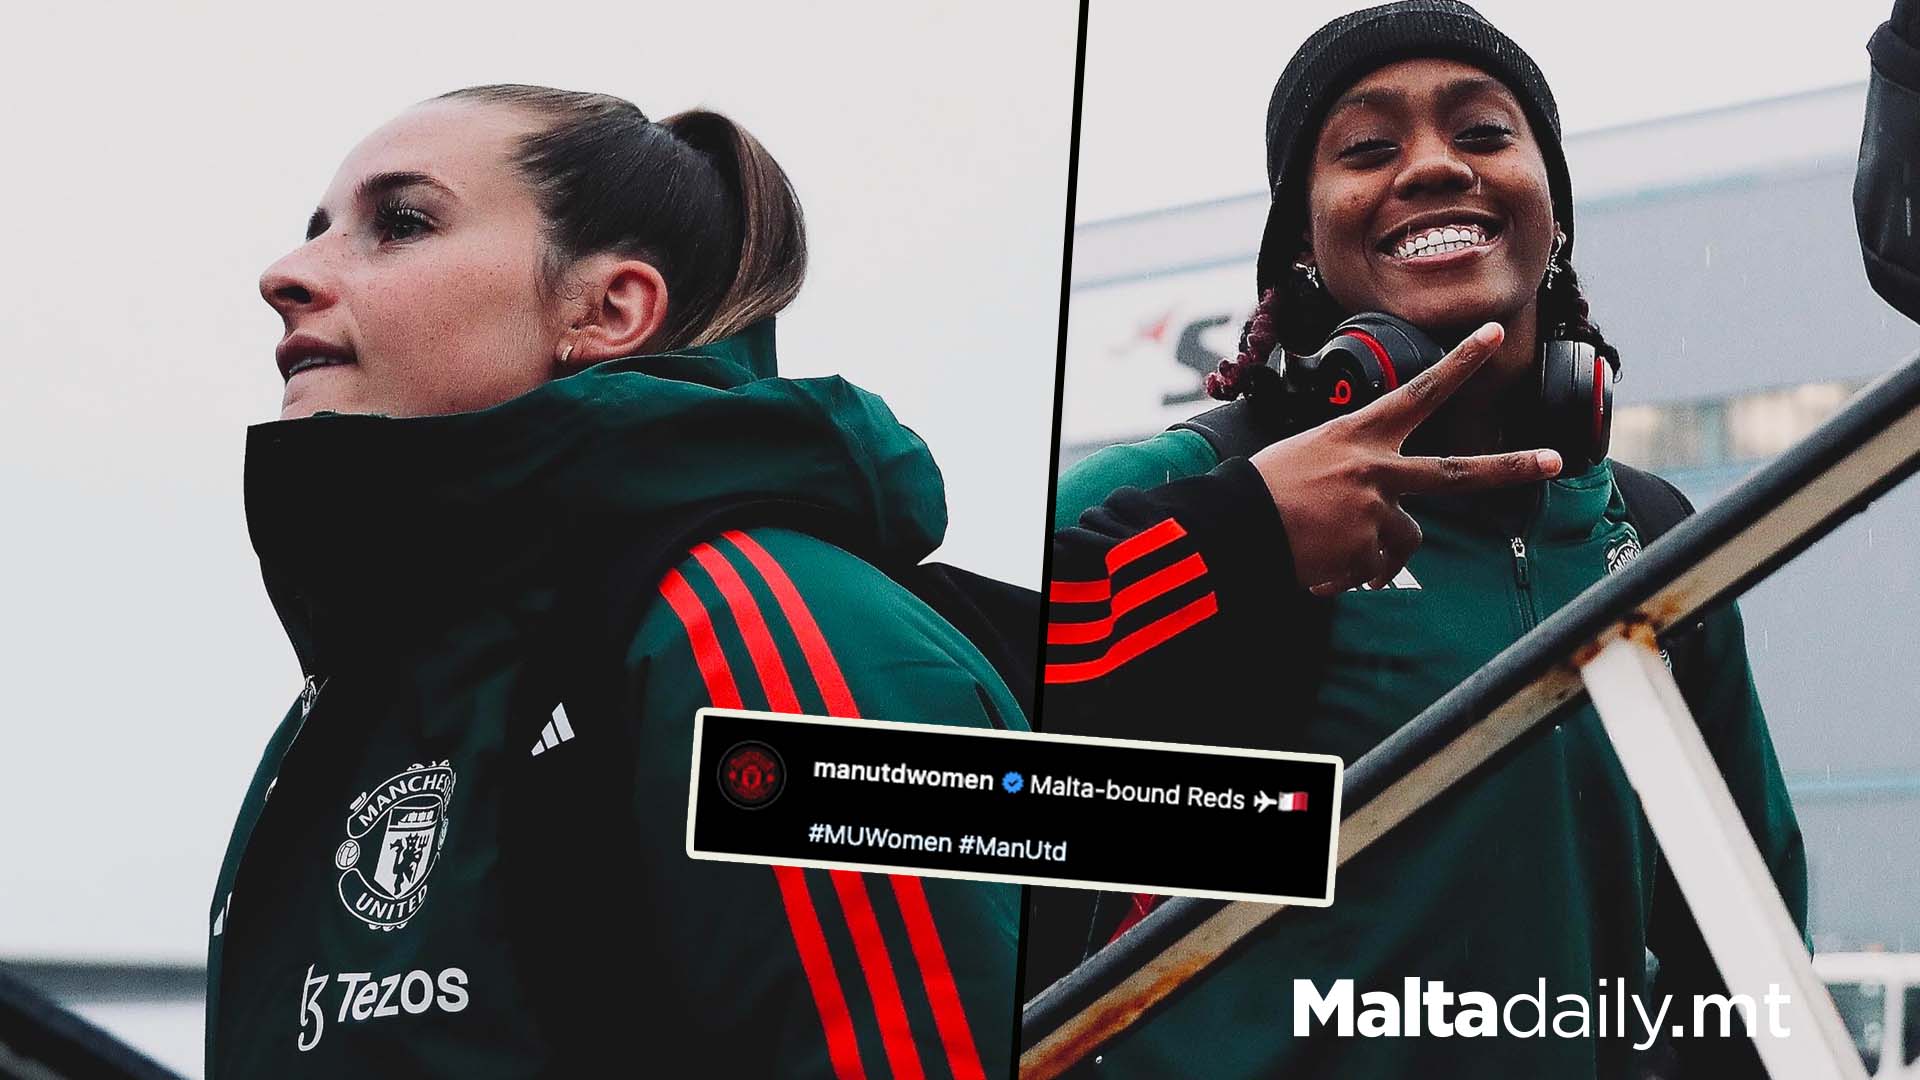 Manchester United Women Make Their Way To Malta